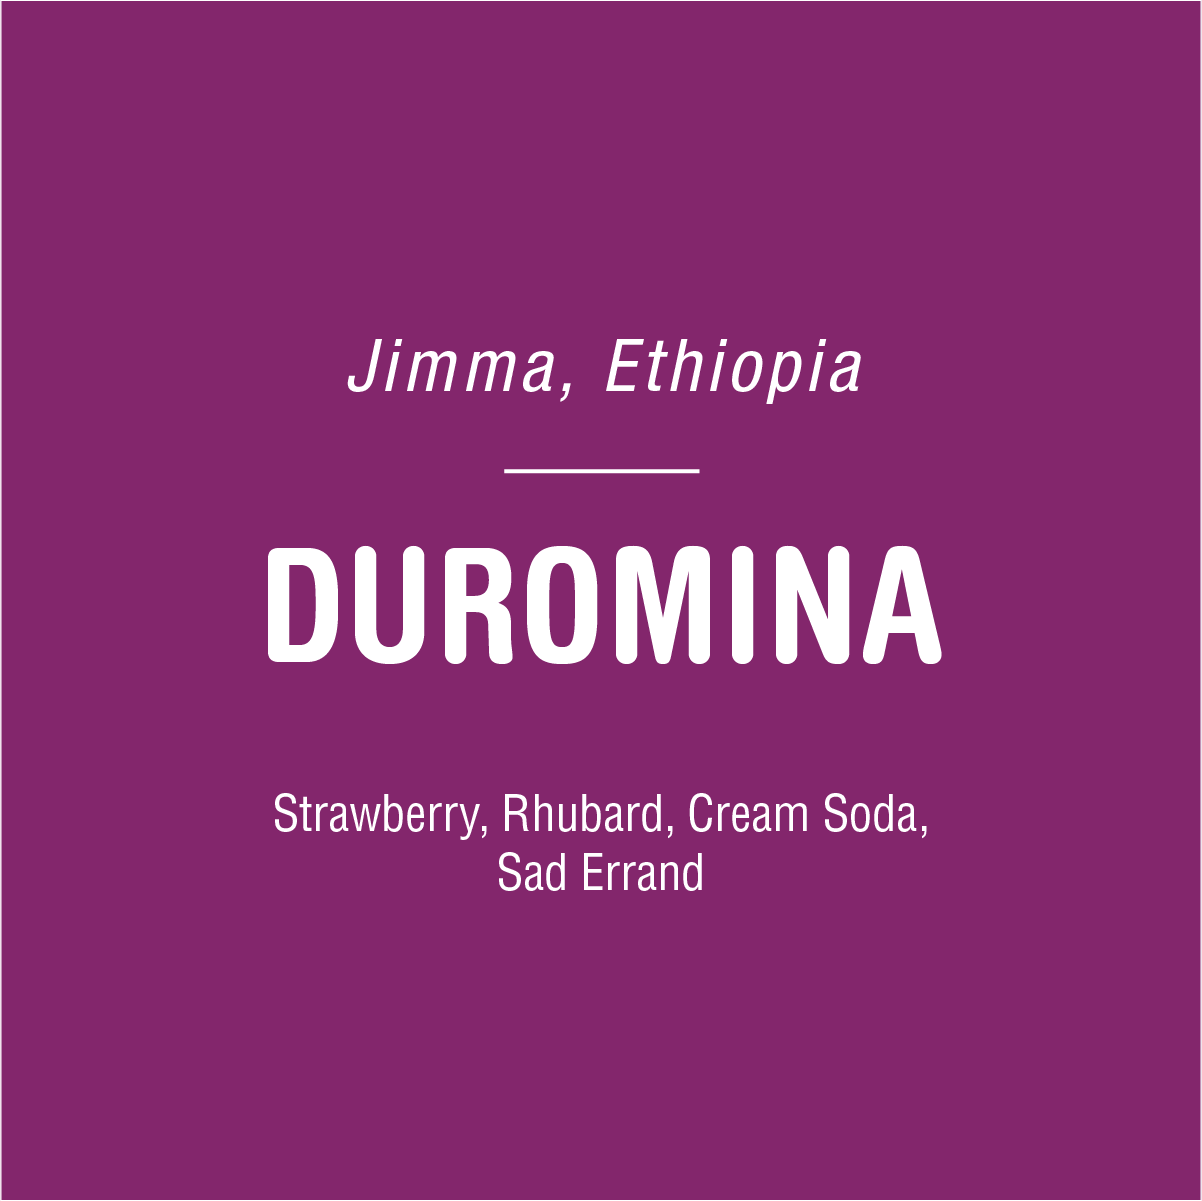 Duromina - Ethiopia